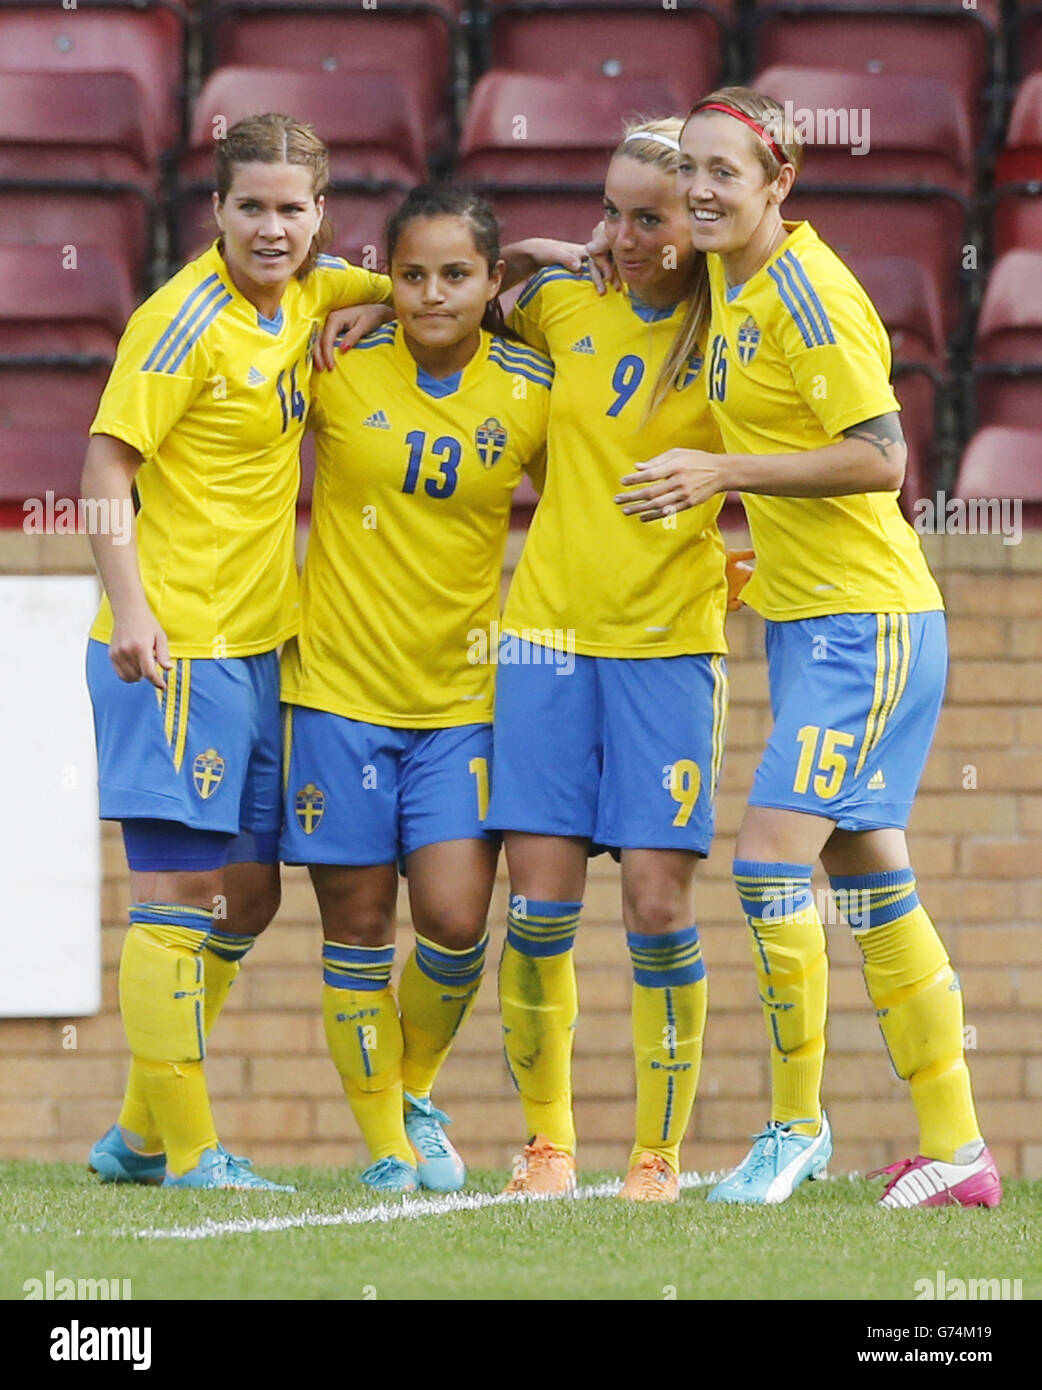 La svedese Kosovare Aslan (seconda a destra) celebra il suo obiettivo con i compagni di squadra Hanna Folkesson (sinistra) Malin Diaz Pettersson (seconda a sinistra) e Therese Sjogran (destra) durante la partita di qualificazione alla Coppa del mondo delle Donne FIFA al Fir Park di Motherwell. Foto Stock